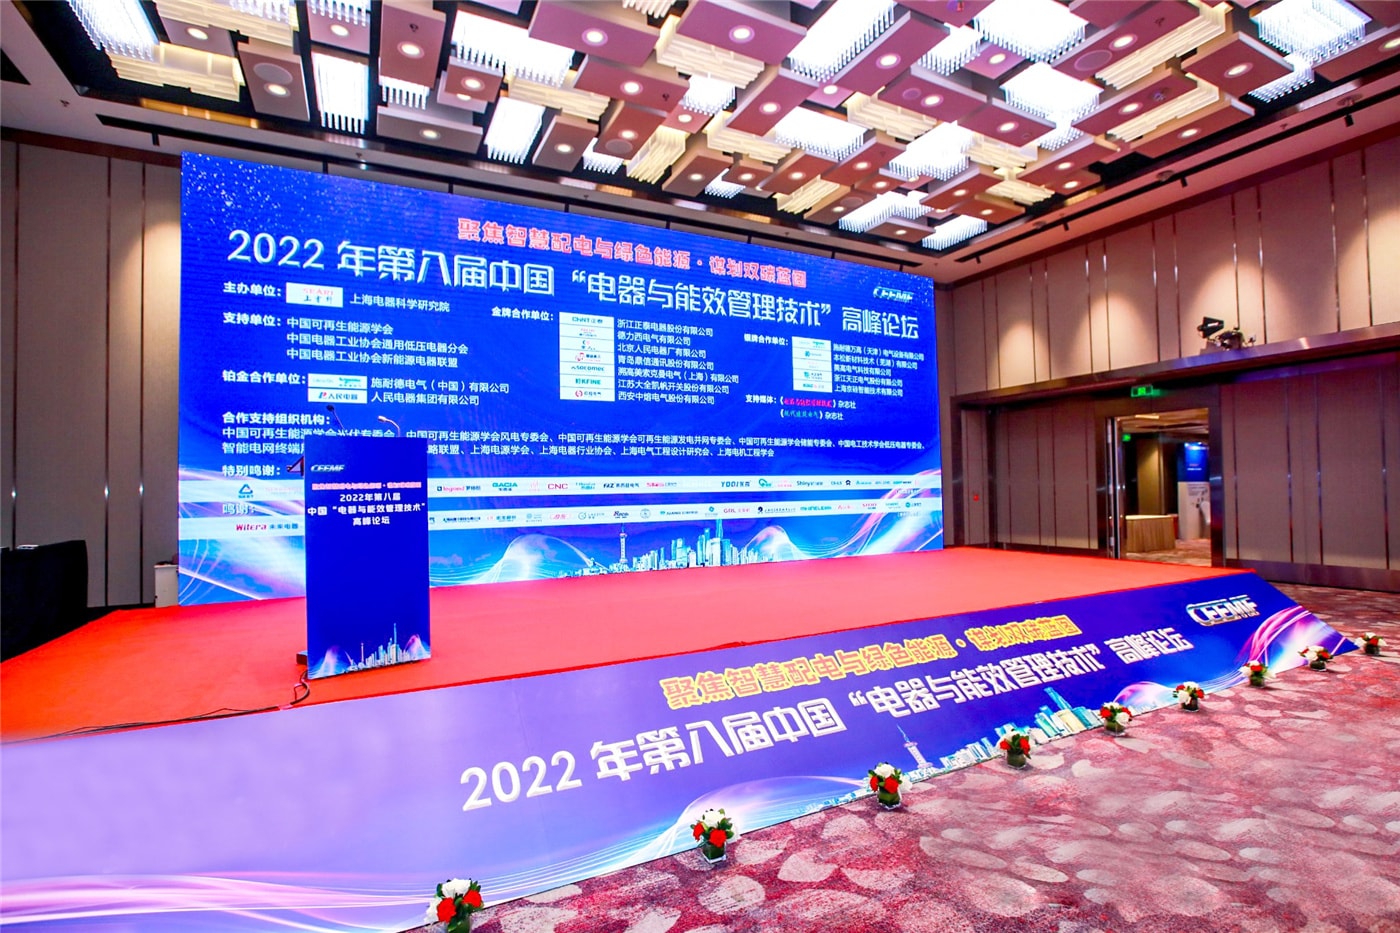 تمت دعوة شركة Benlong Automation للمشاركة في القمة الثامنة لتكنولوجيا إدارة الأجهزة وكفاءة الطاقة في الصين لعام 2022